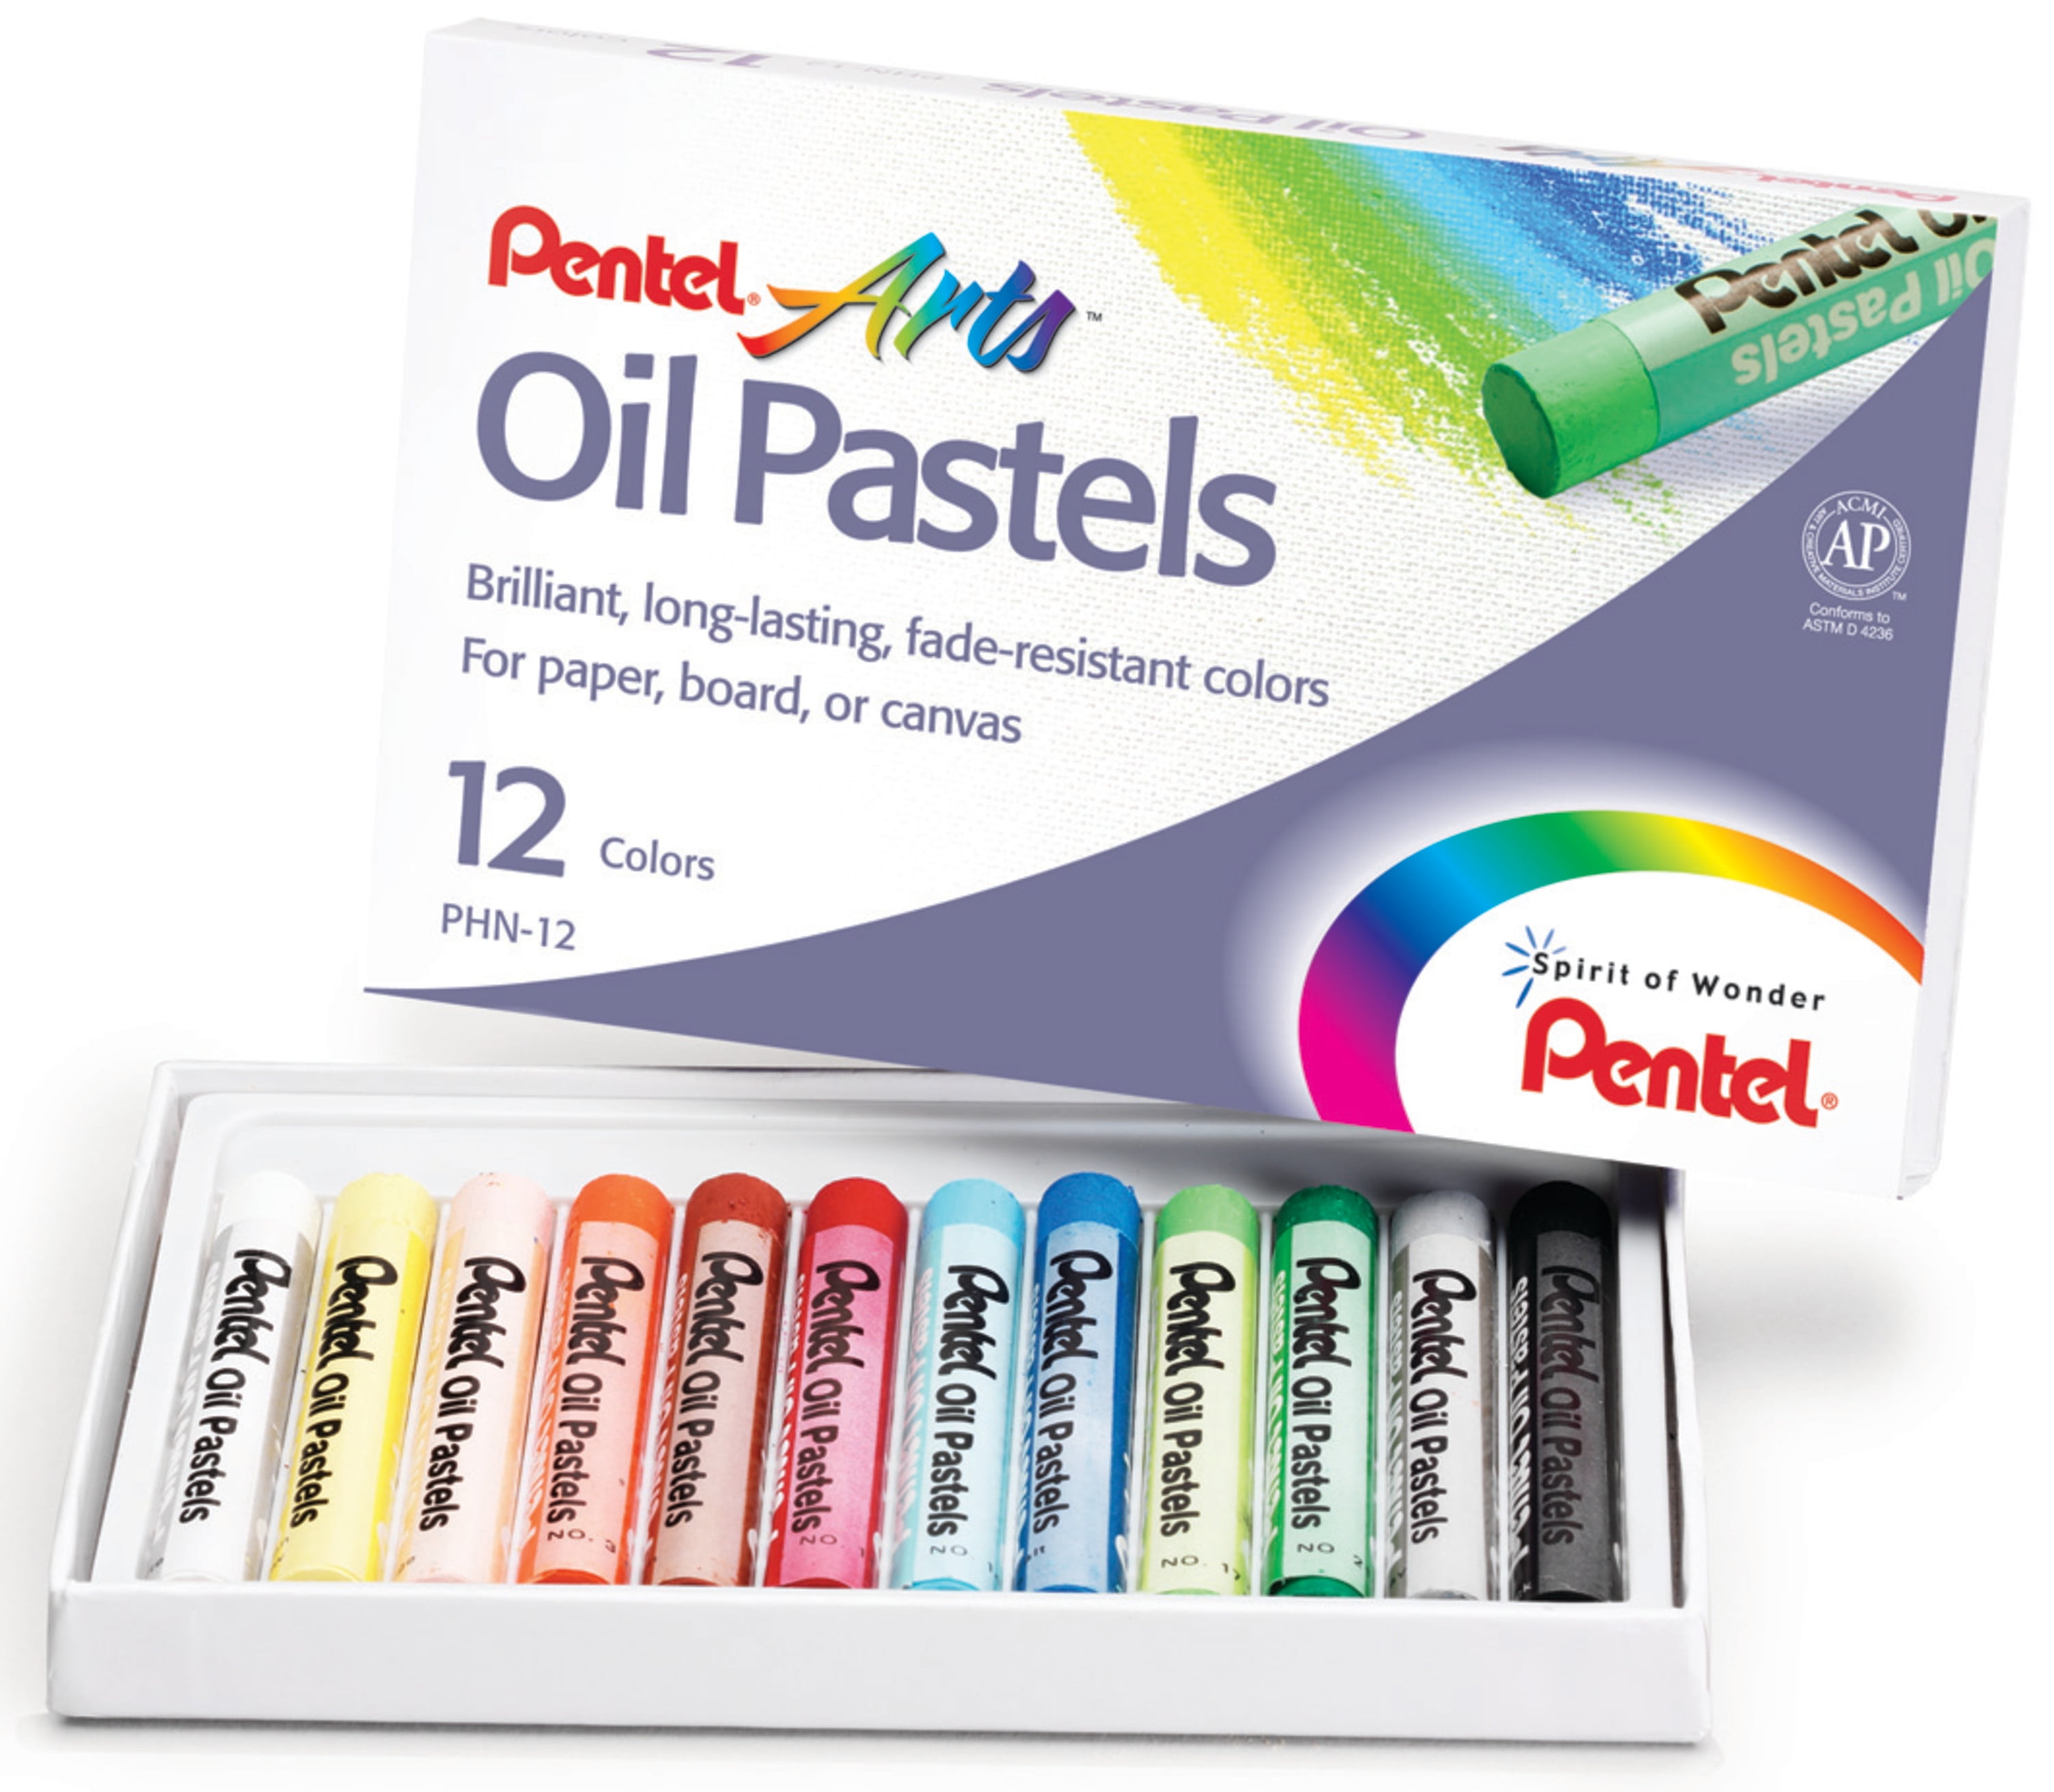 Sennelier Extra-Soft Pastel Half Stick Set, 40-Colors